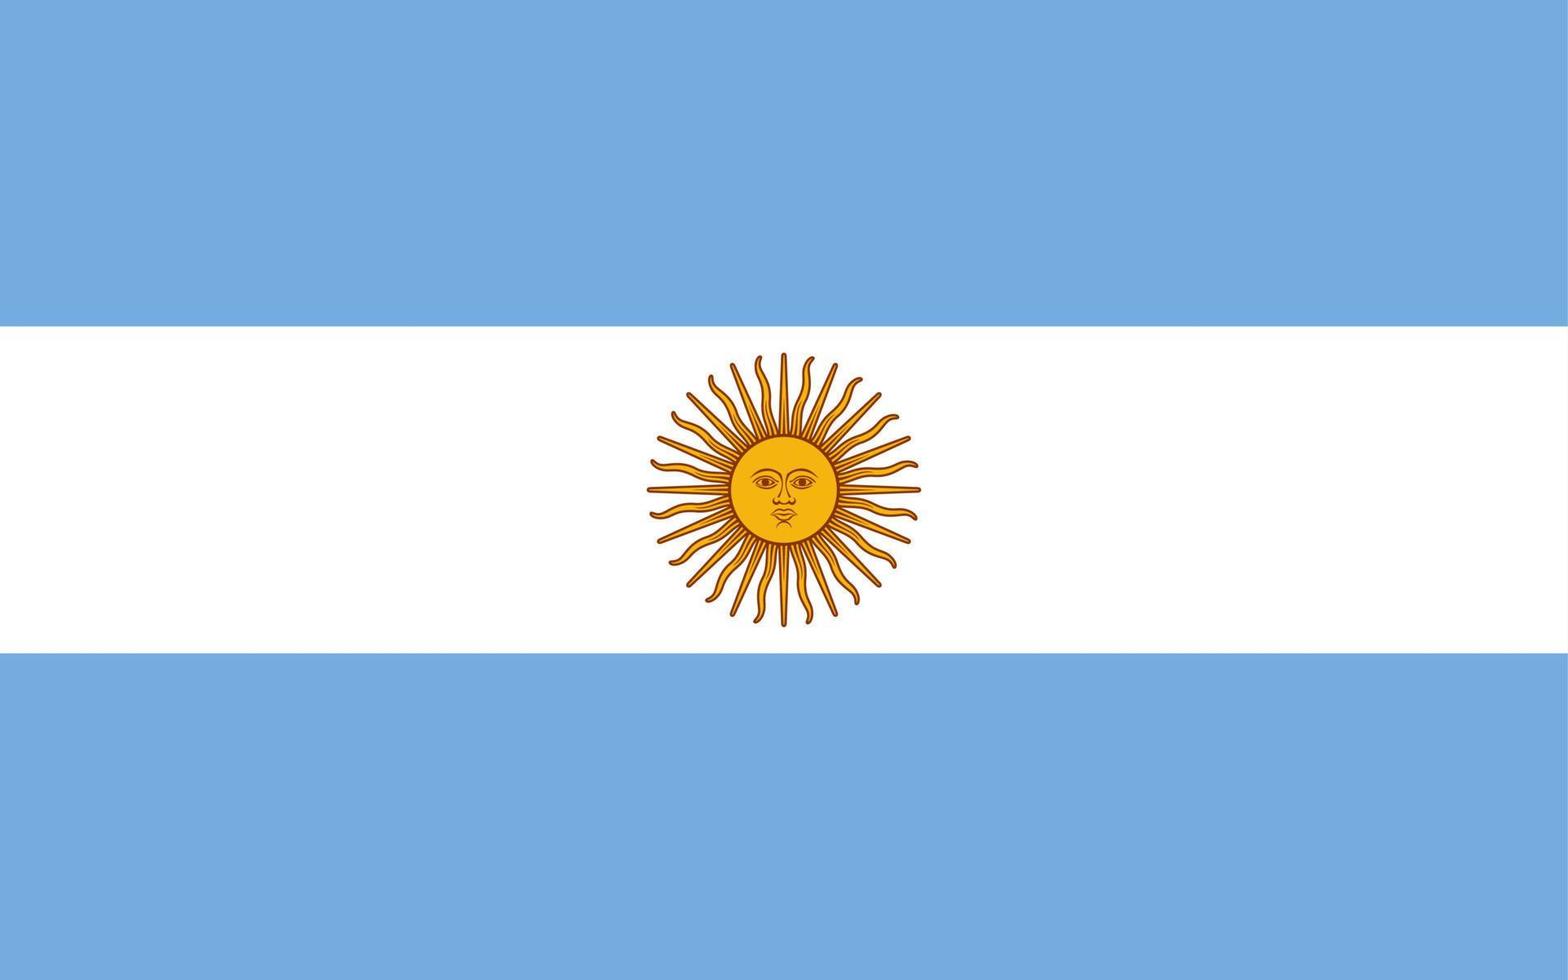 drapeau argentine symbole d'illustration vectorielle icône nationale du pays. liberté nation drapeau Argentine indépendance patriotisme célébration conception gouvernement international officiel symbolique objet Culture vecteur